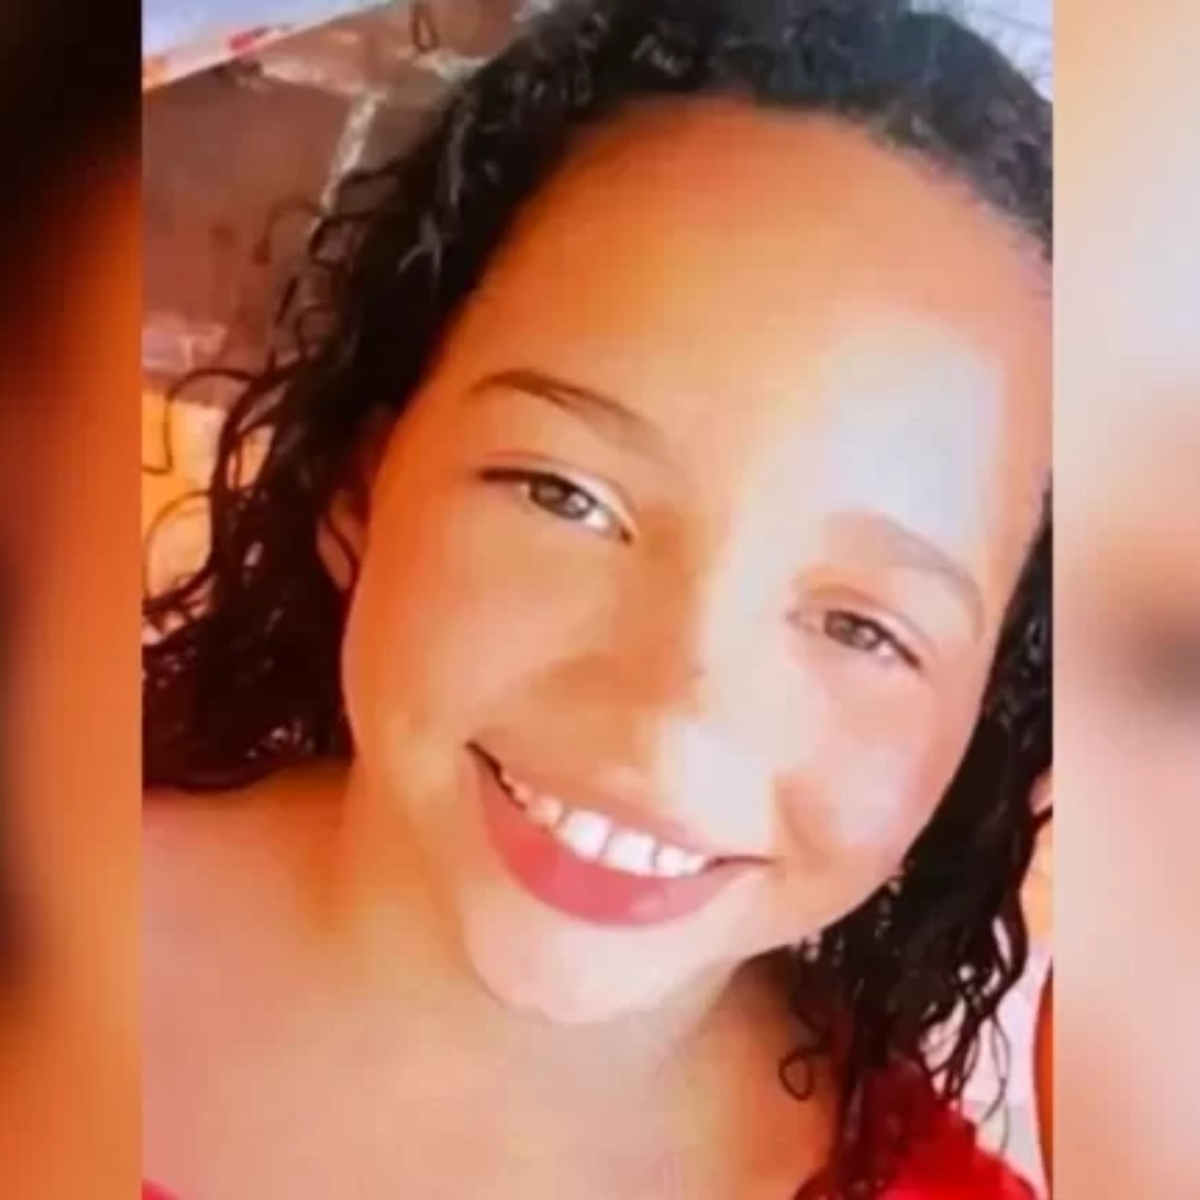  Criança de 11 anos morre durante tiroteio em festa de aniversário 